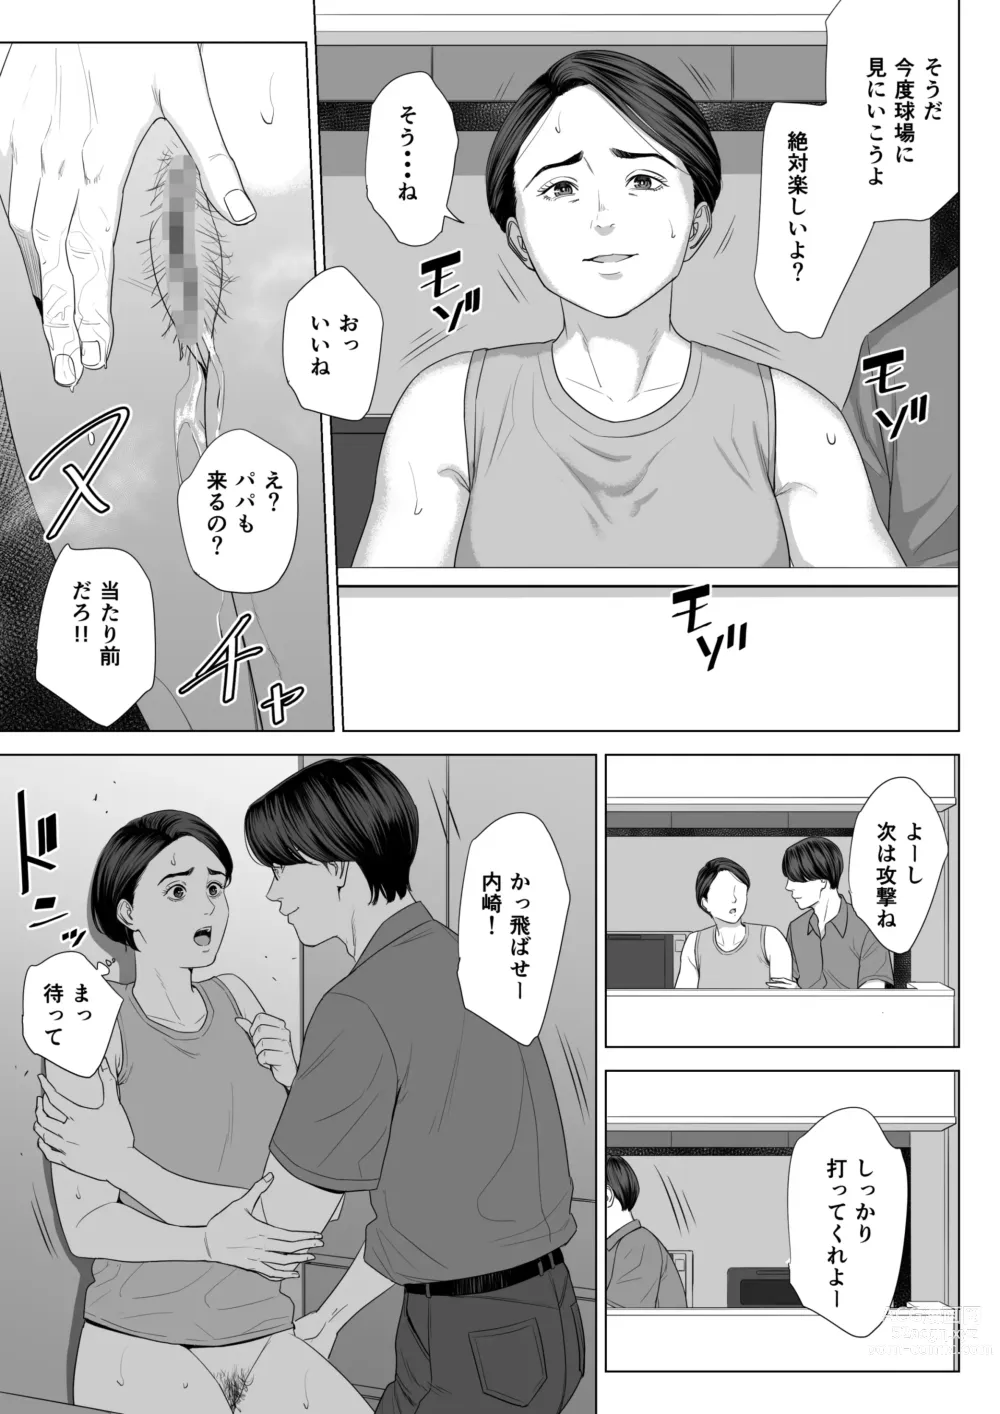 Page 62 of doujinshi Gibo no Tsukaeru Karada.